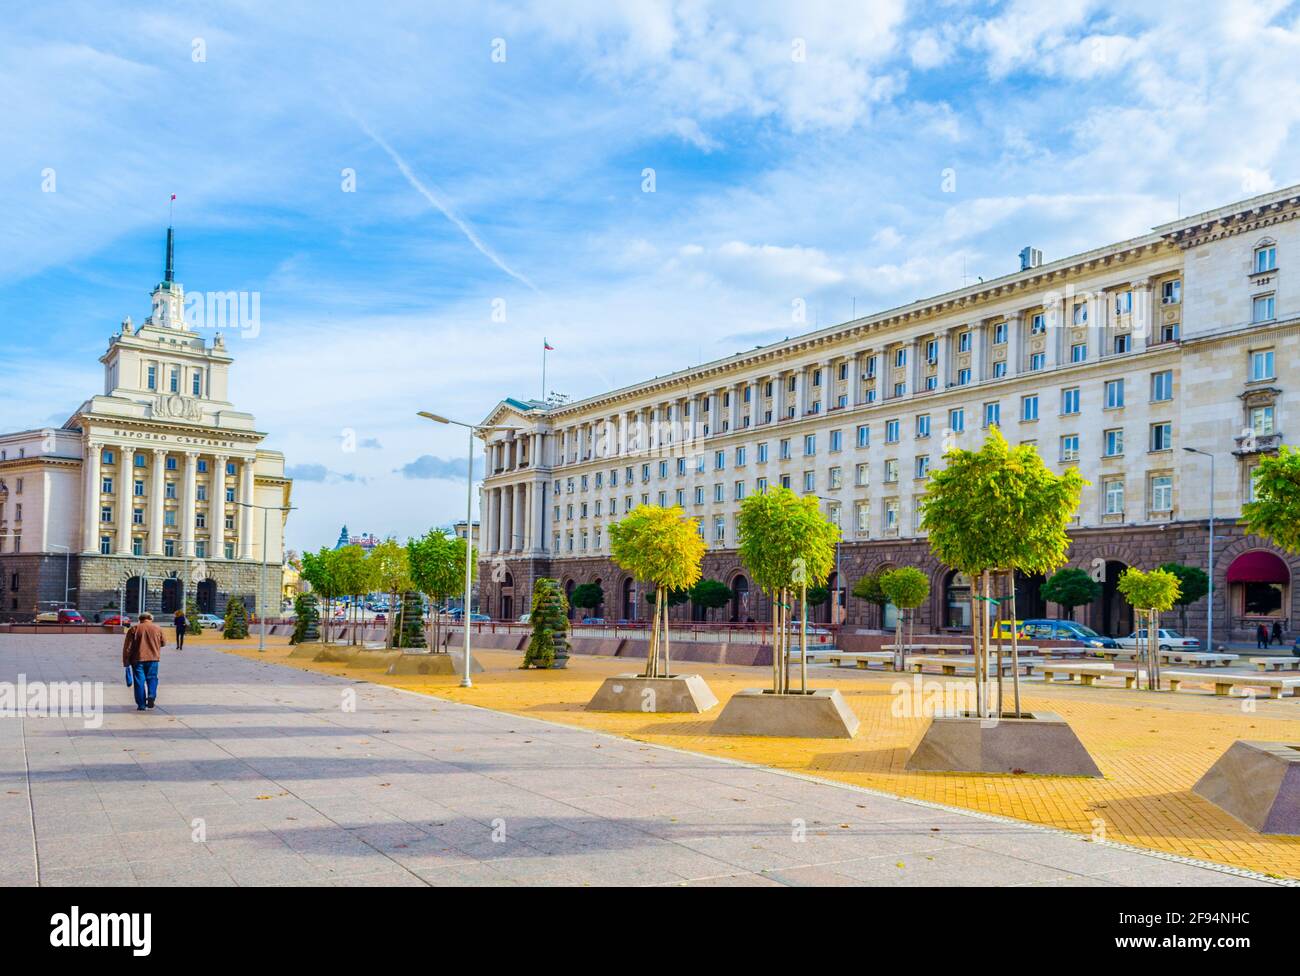 Vista della piazza dell'indipendenza dominata dall'edificio dell'assemblea nazionale - ex sede del partito comunista bulgaro - a Sofia, Bulgaria Foto Stock